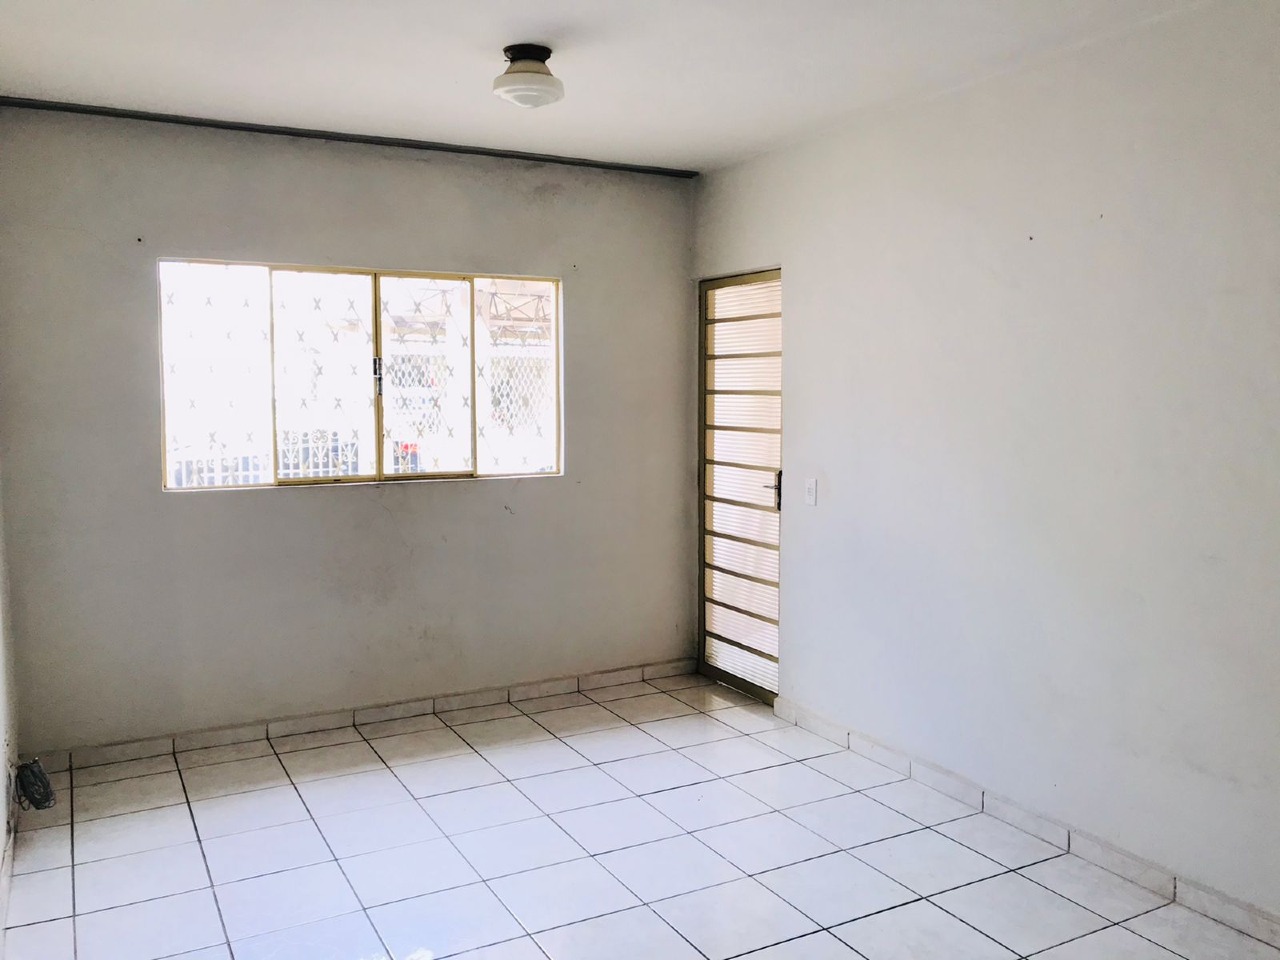 Casa à venda, 2 quartos, no bairro Parque Primeiro de Maio em Piracicaba - SP